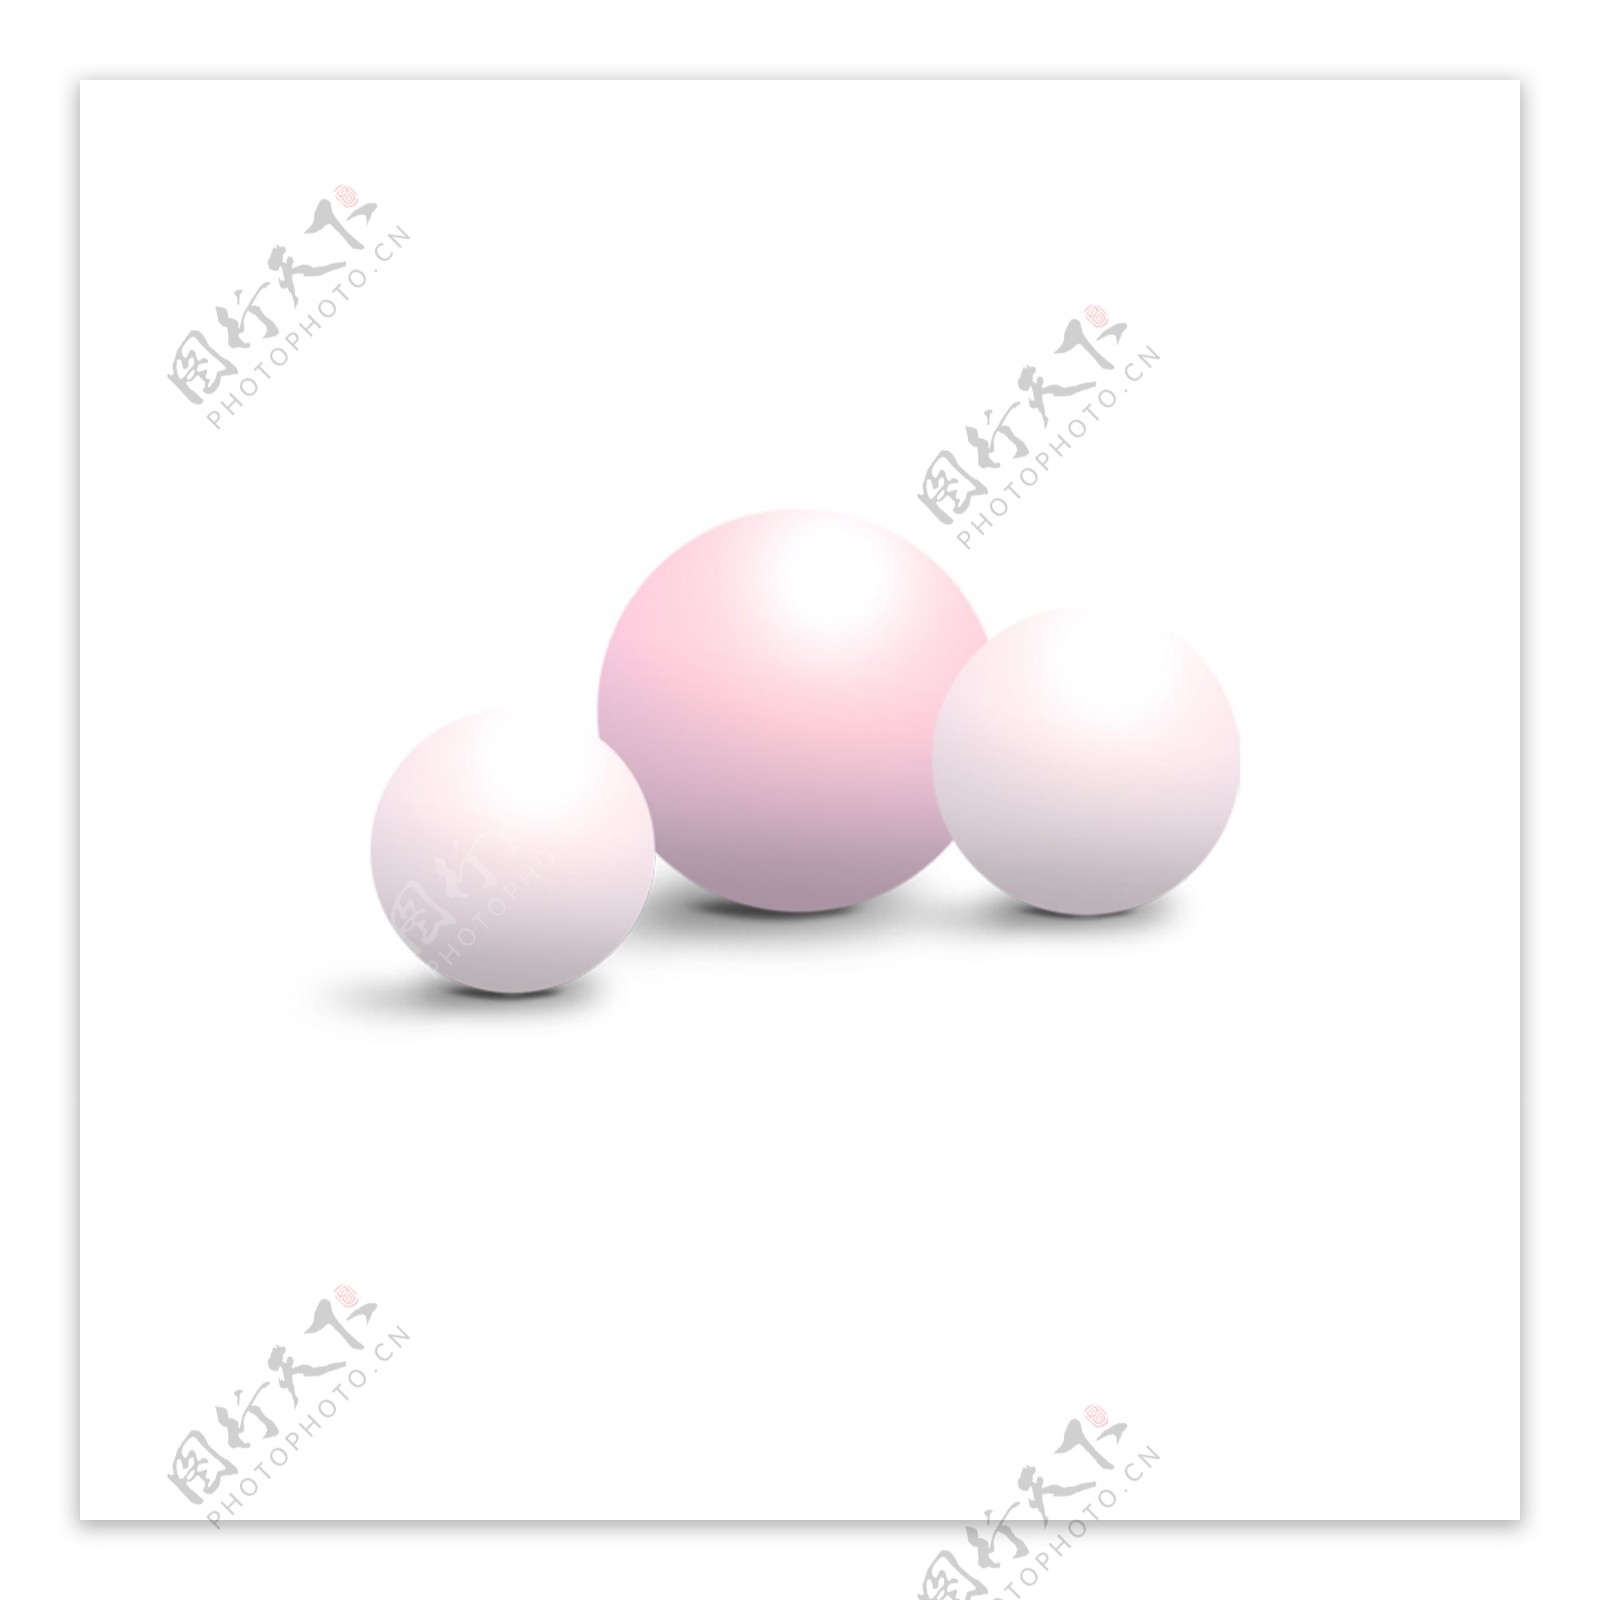 三颗粉色的球素材可商用